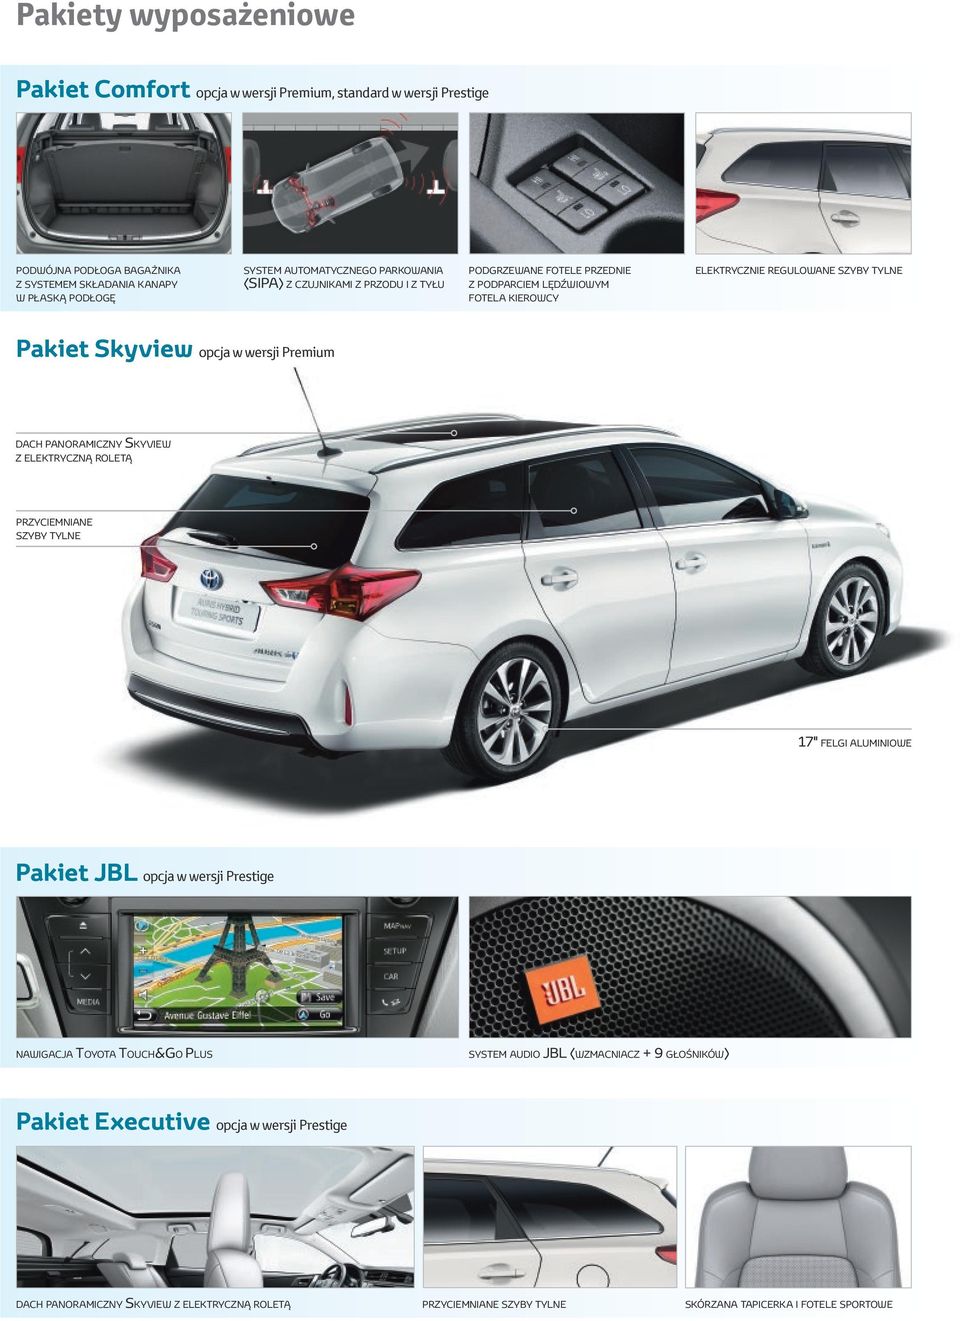 wersji Premium dach panoramiczny Skyview z elektryczną roletą przyciemniane szyby tylne 7" felgi aluminiowe Pakiet JBL opcja w wersji Prestige nawigacja Toyota Touch&Go Plus system